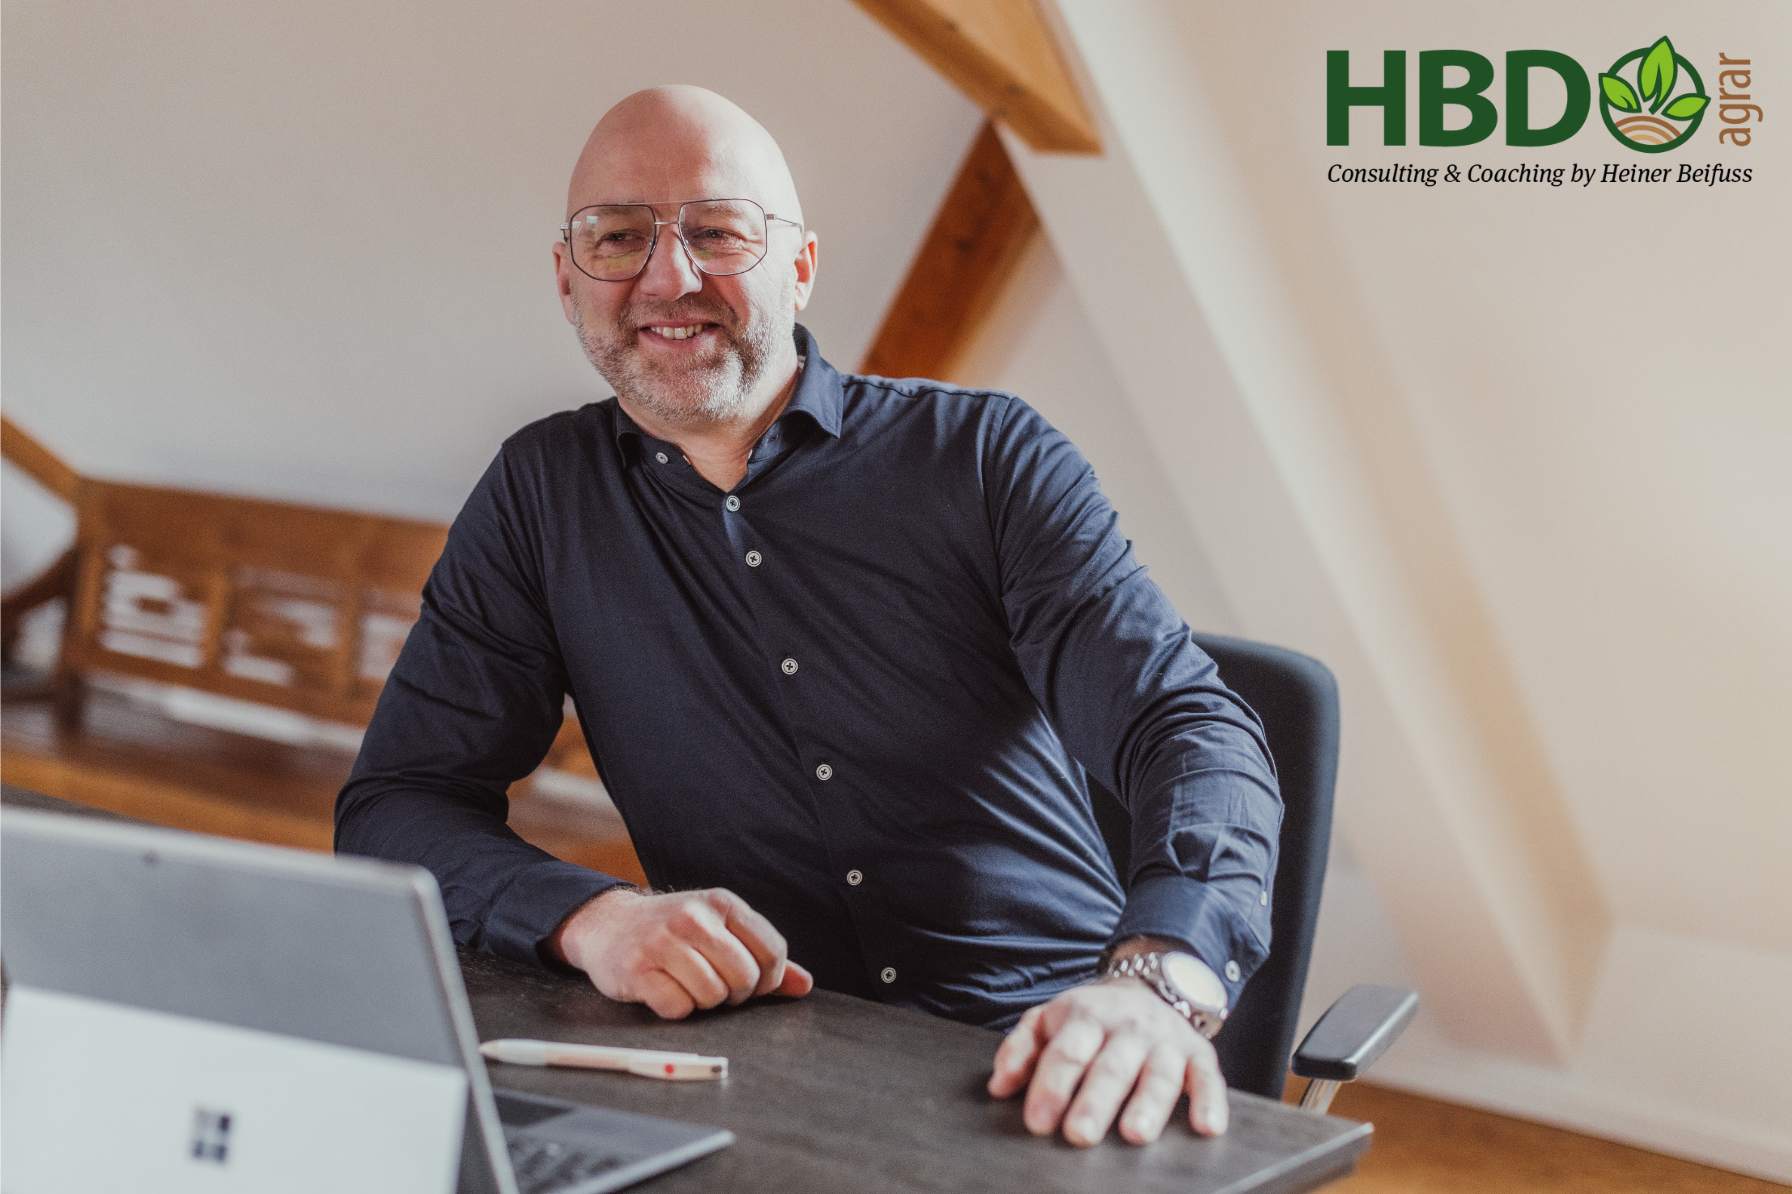 Heiner Beifuss sitzt an seinem Schreibtisch vor seinem Laptop in einem Raum mit Dachbalken. Außerdem ist das HBD Agrar - Consulting und Coaching by Heiner Beifuss - Logo zu sehen